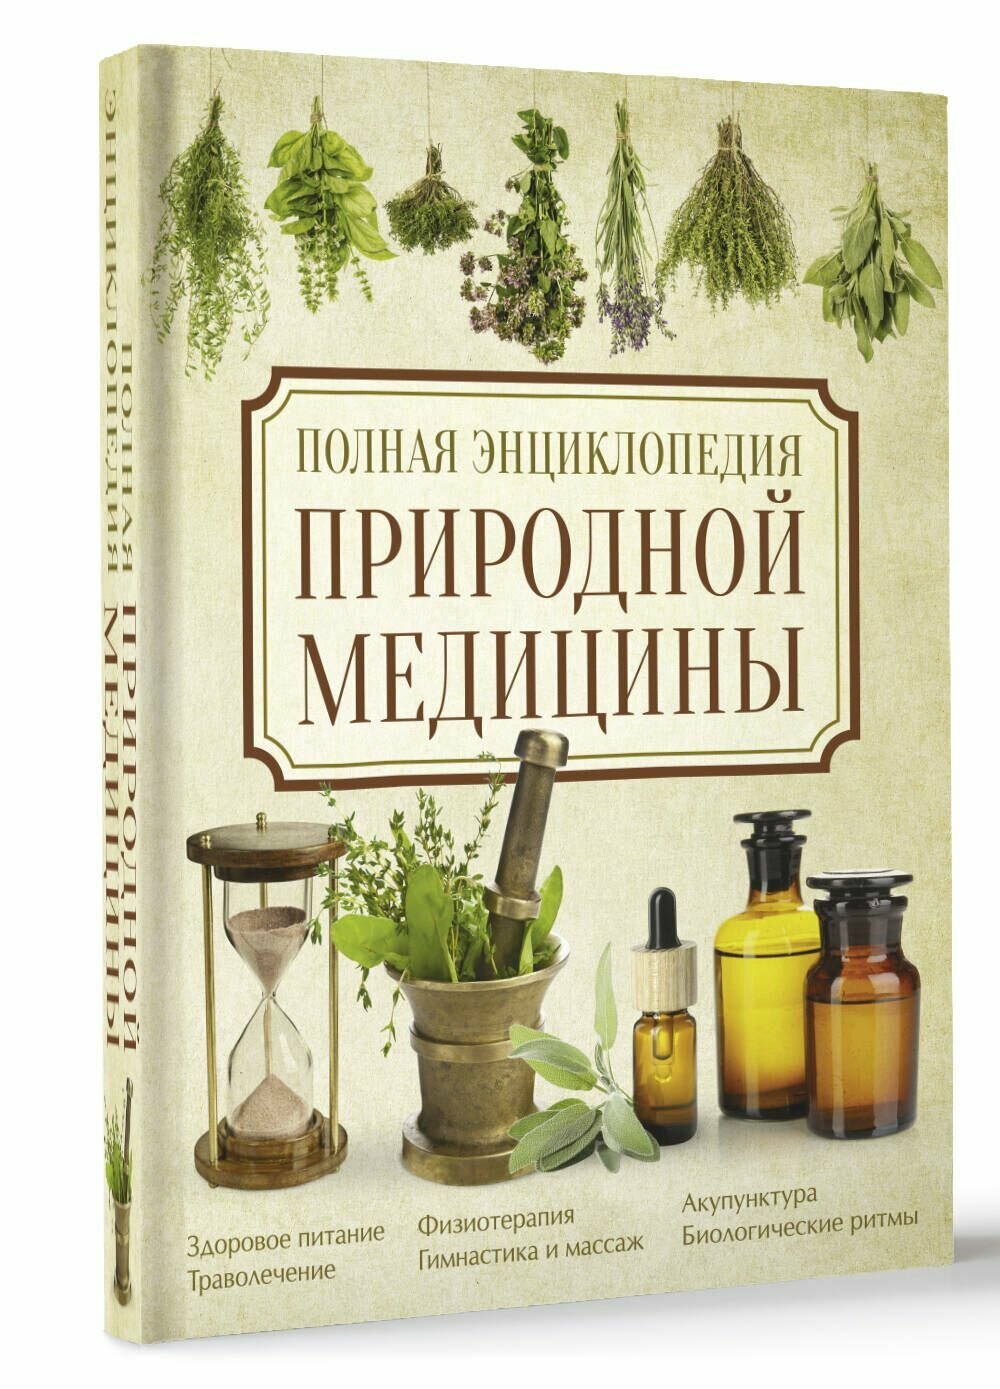 Полная энциклопедия природной медицины - фото №4